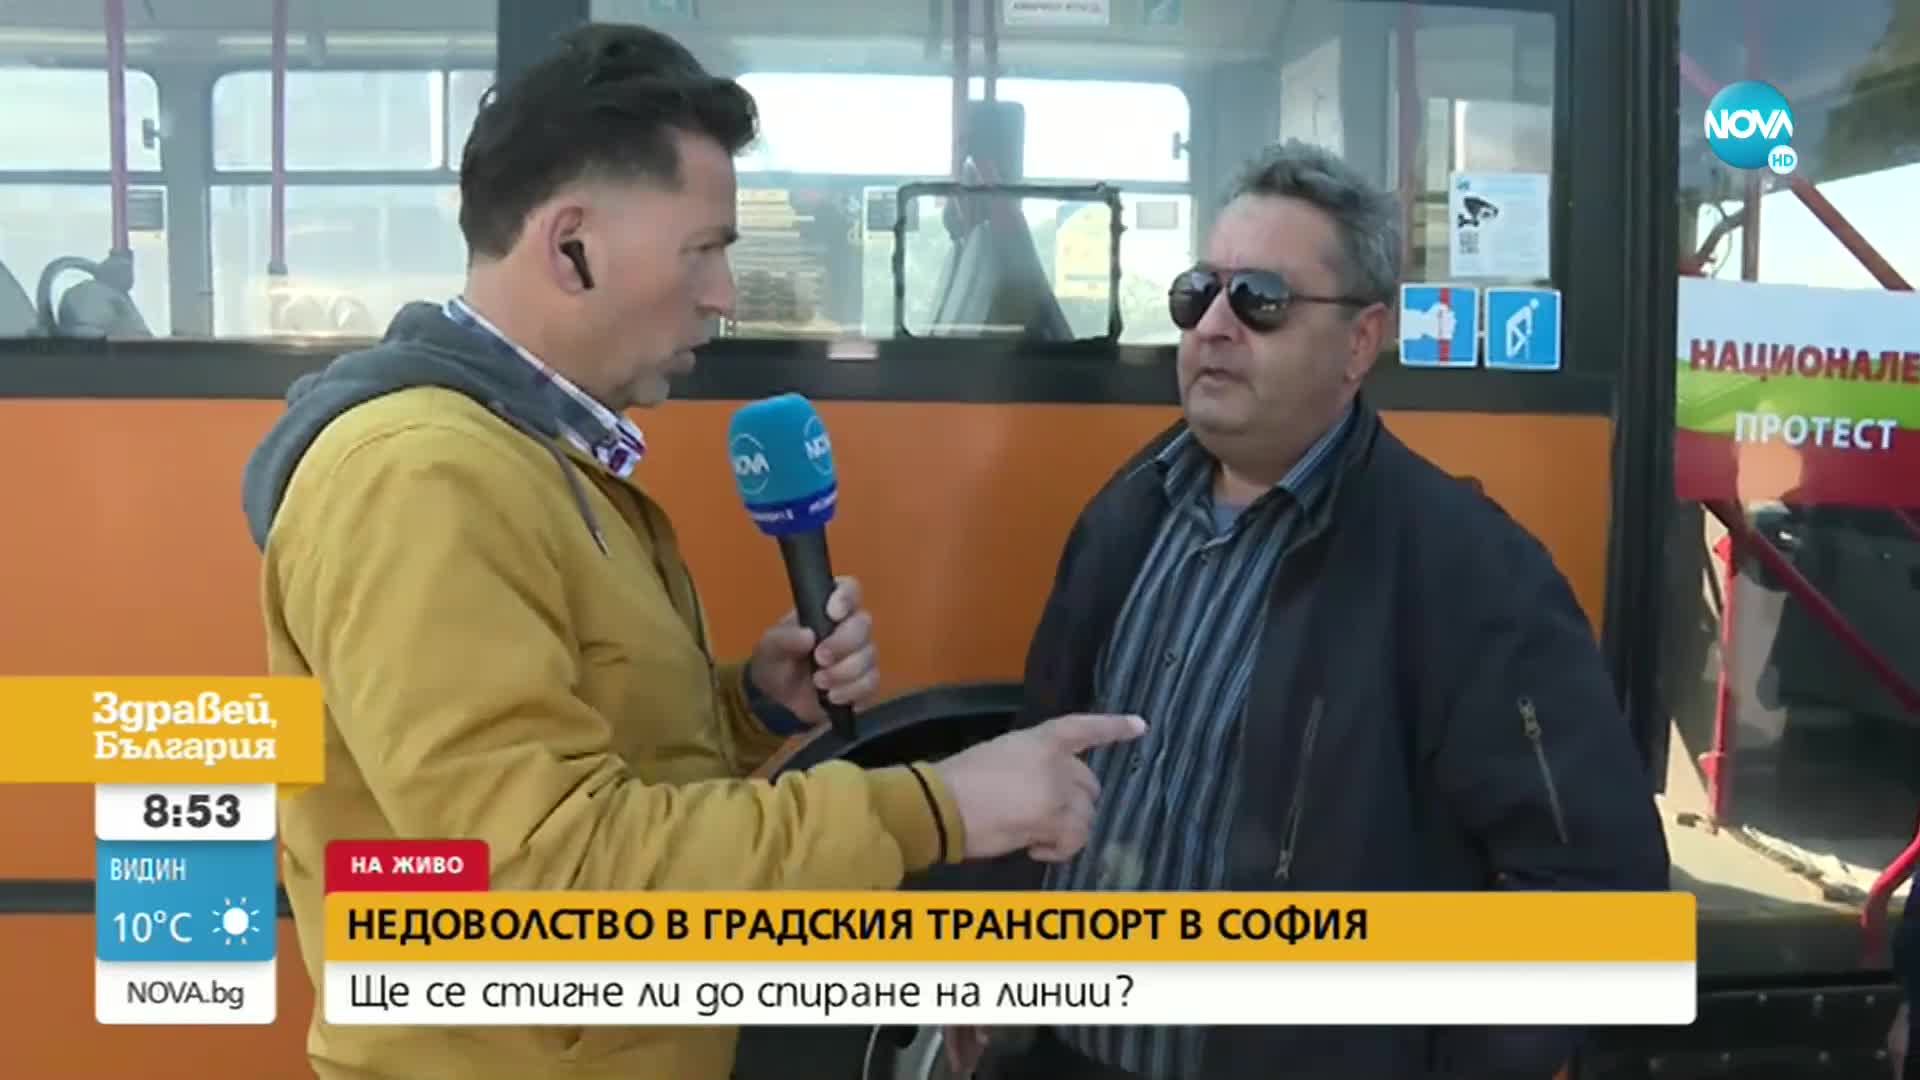 Ще се стигне ли до спиране на част от градския транспорт в София